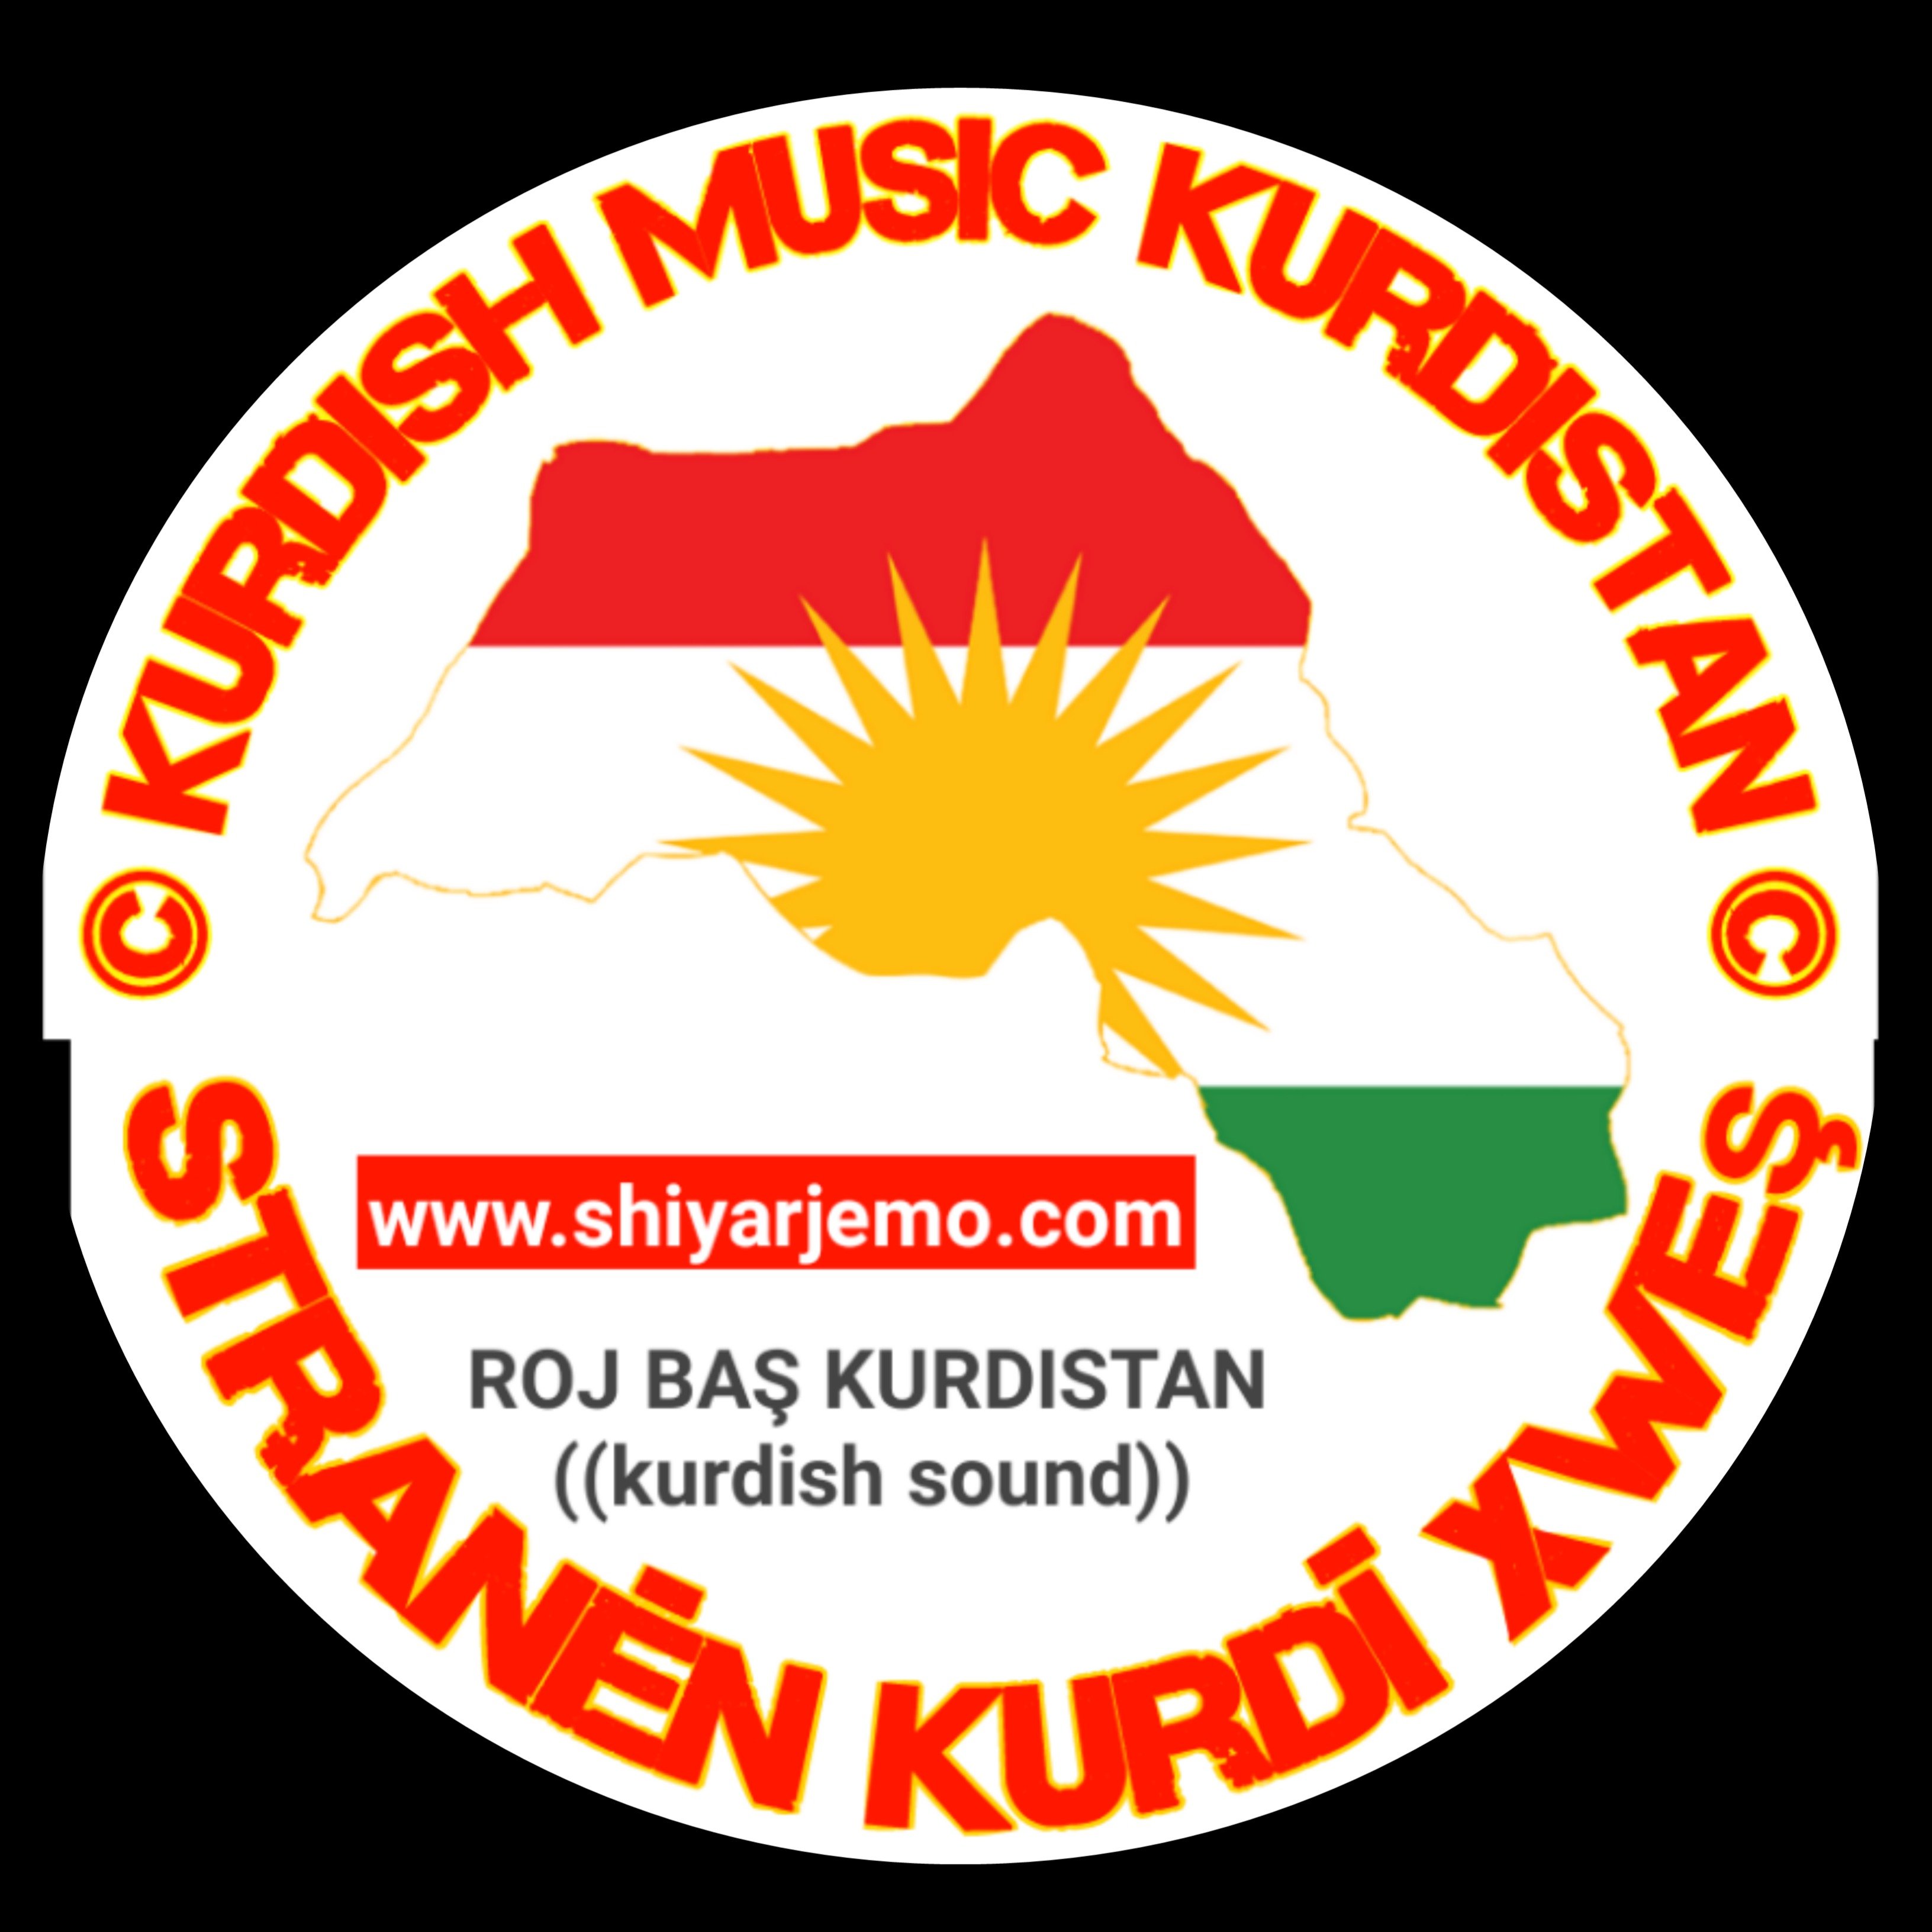 صوت كرد قناة متعلقة بالنشر اغاني كردية وكليبات كردية جميلة يختص بالاجمل اغاني كردية الجديدة